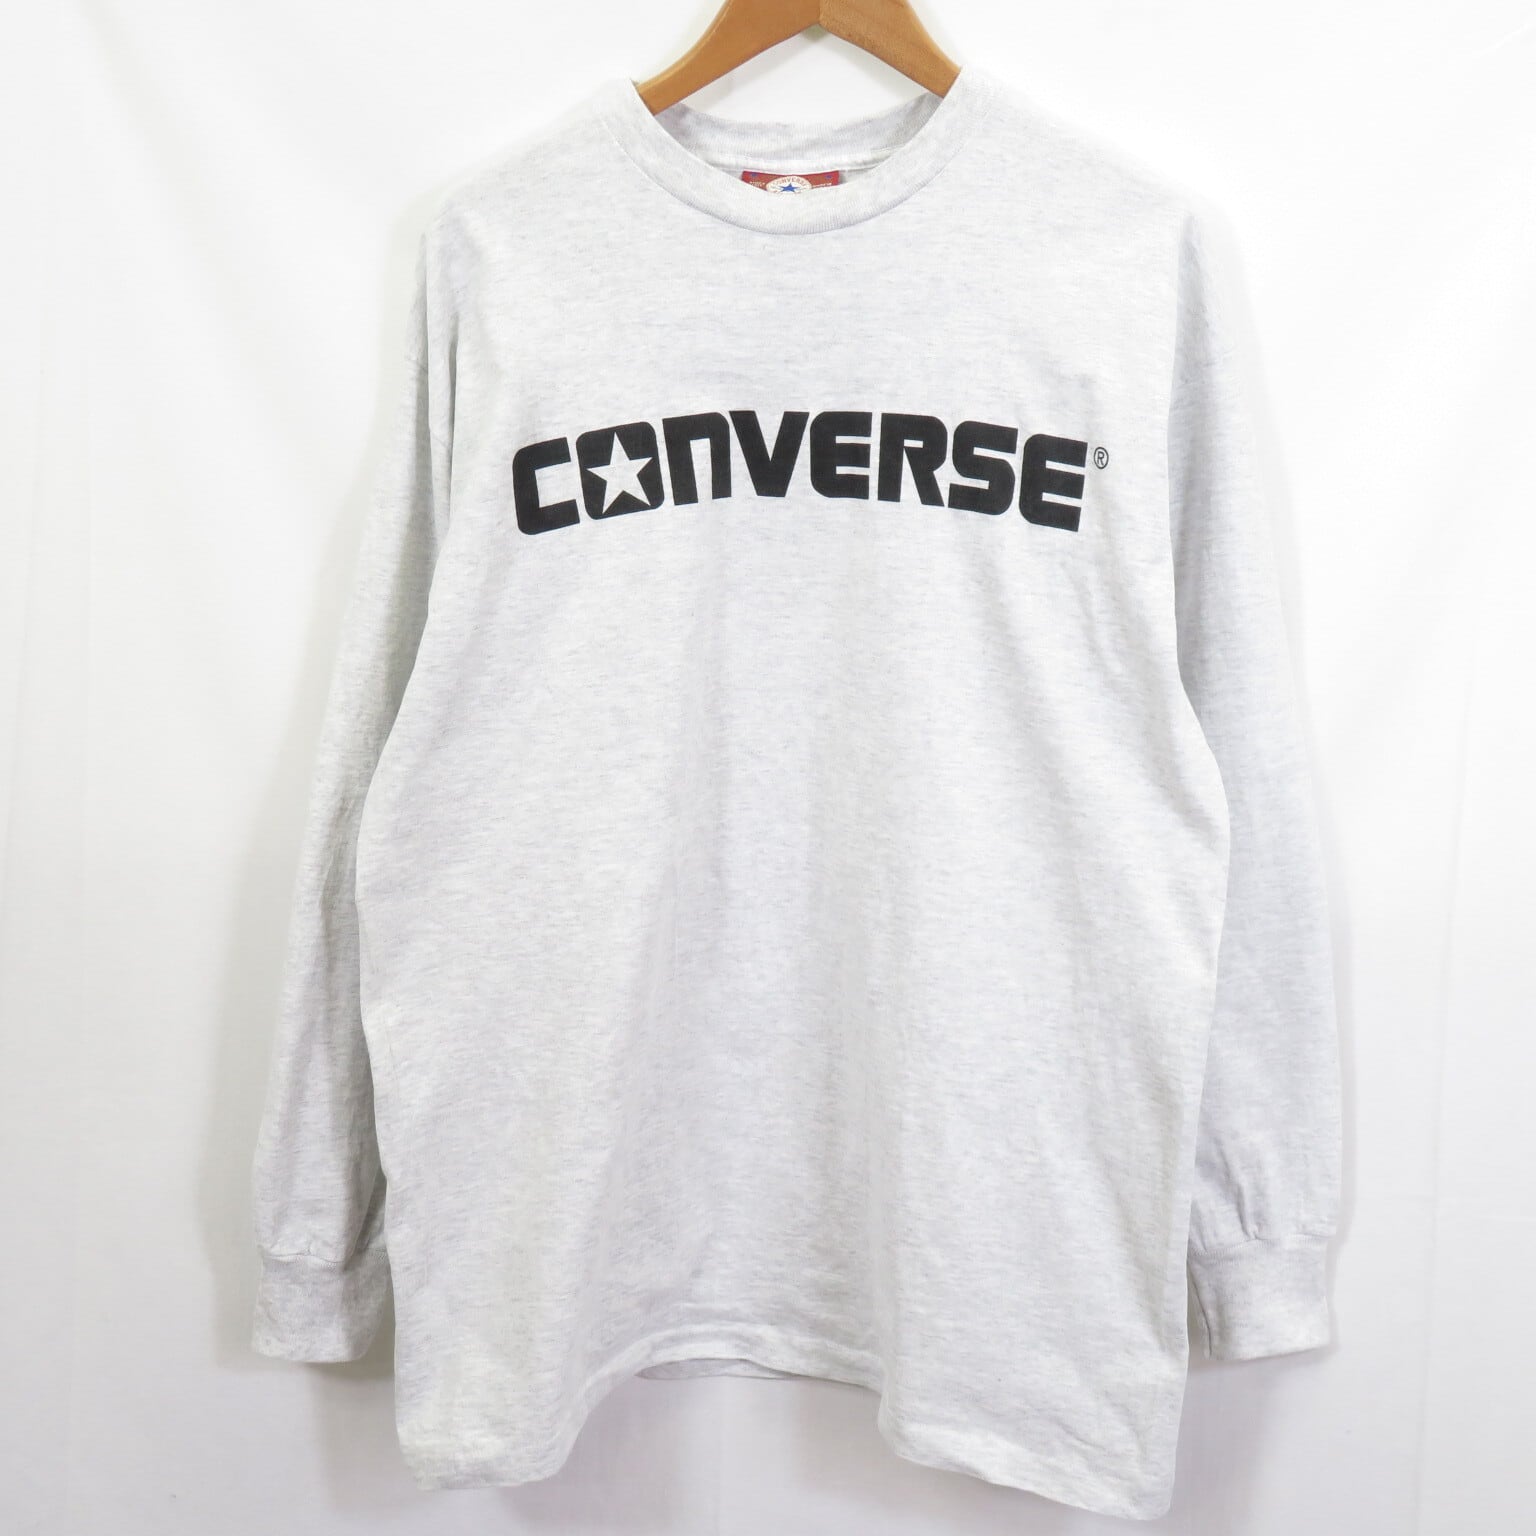 Converse コンバース ロングtシャツ - トップス